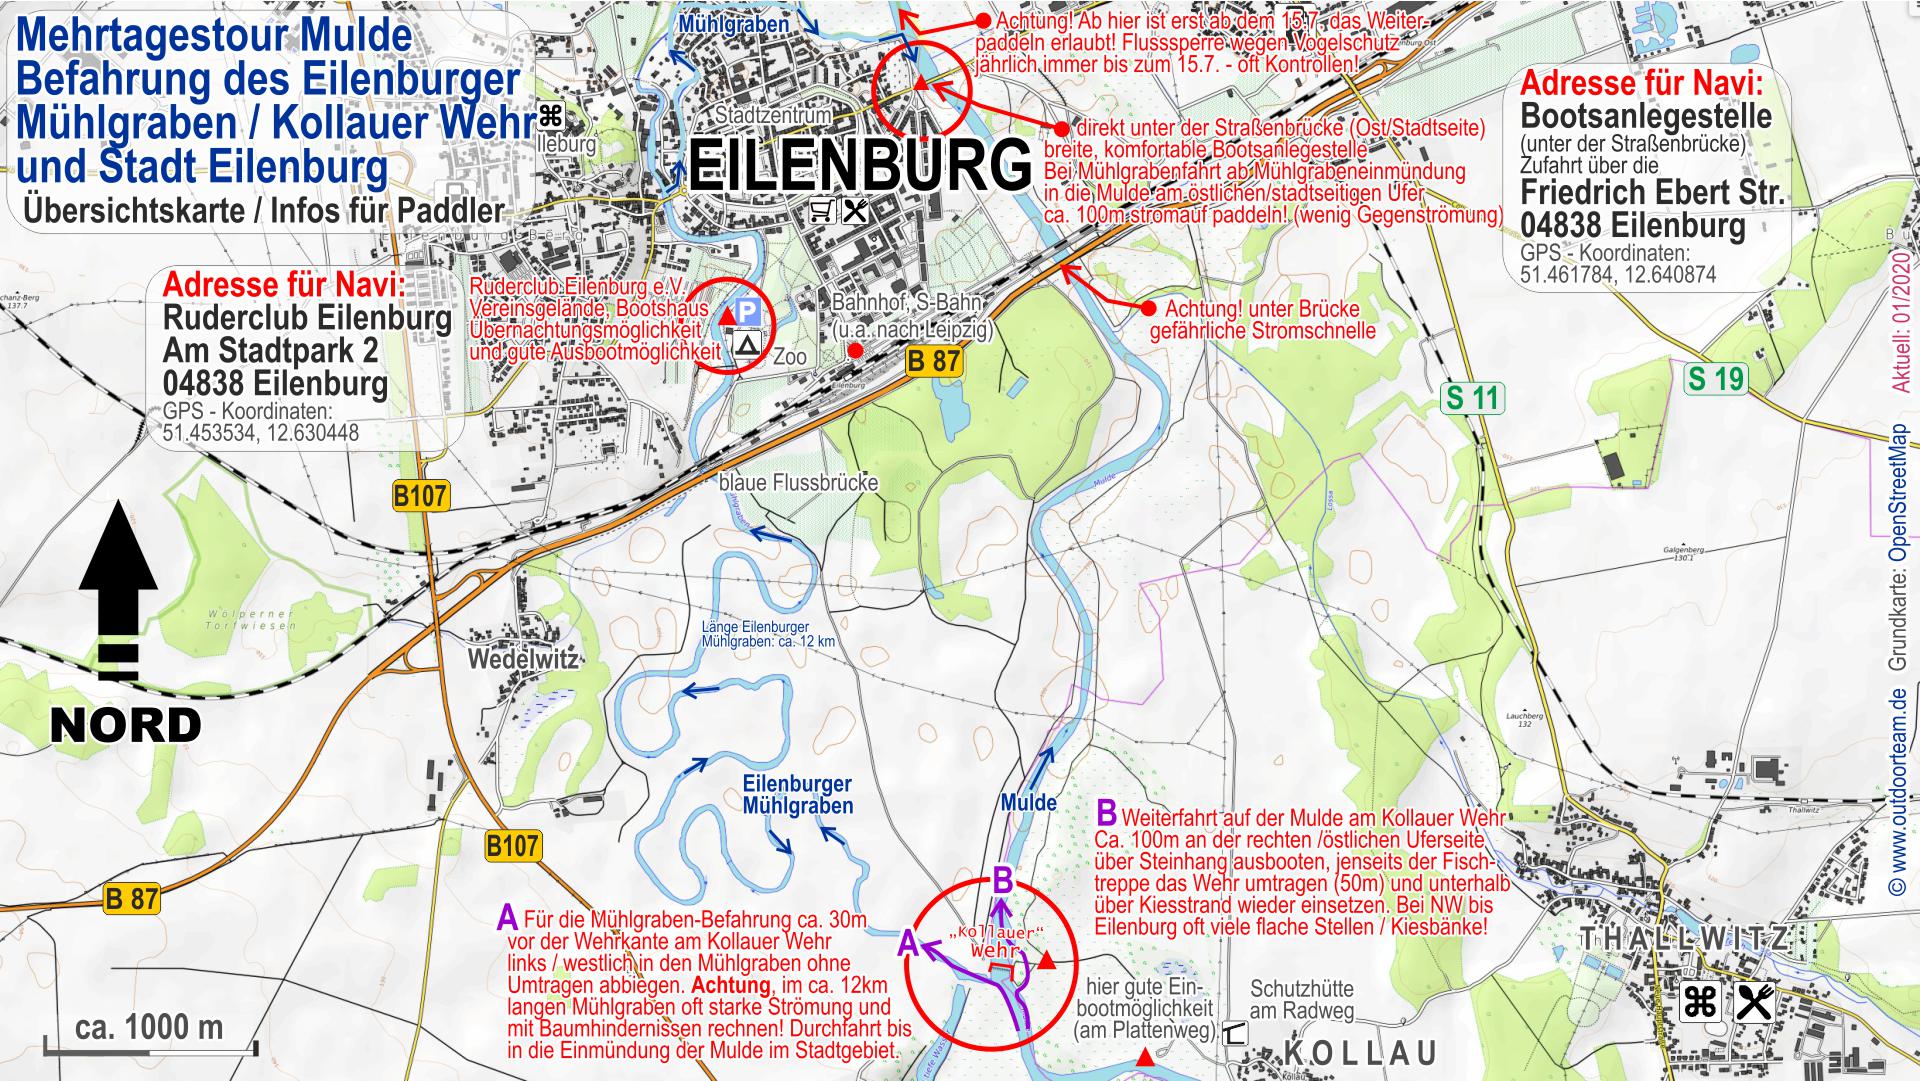 Detailkarte vom Muldefluss und vom Eilenburger Mühlgraben im Bereich Kollauer Wehr und Stadt Eilenburg.